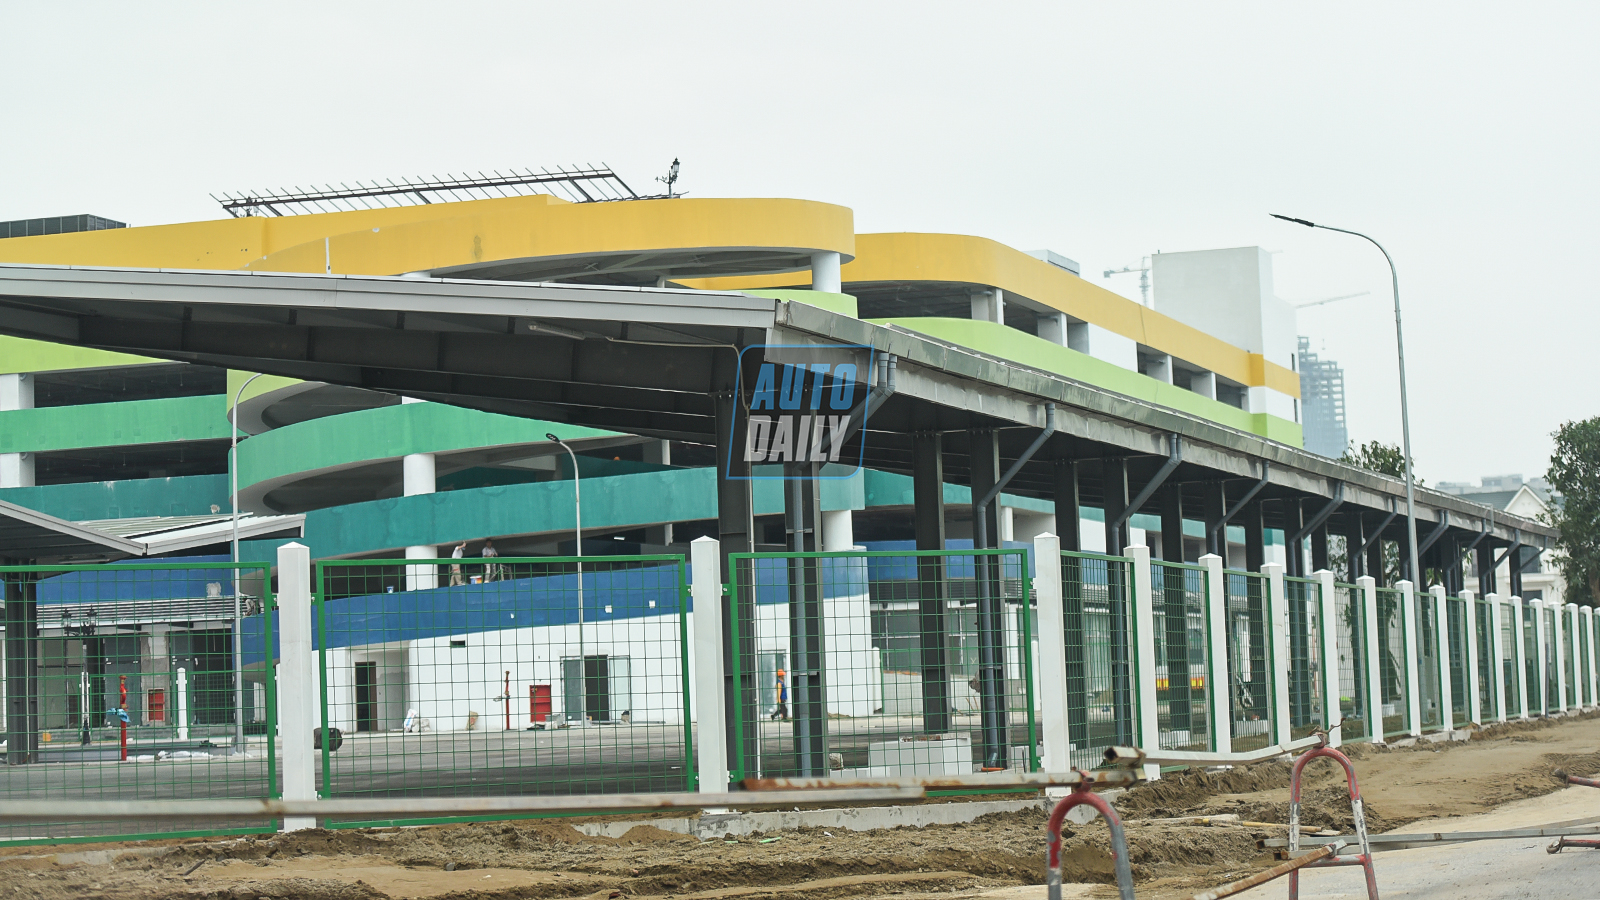 Xe Bus điện của VinFast sắp hoạt động tại Hà Nội, nhà ga chính sắp hoàn thiện dsc-9363-copy.jpg